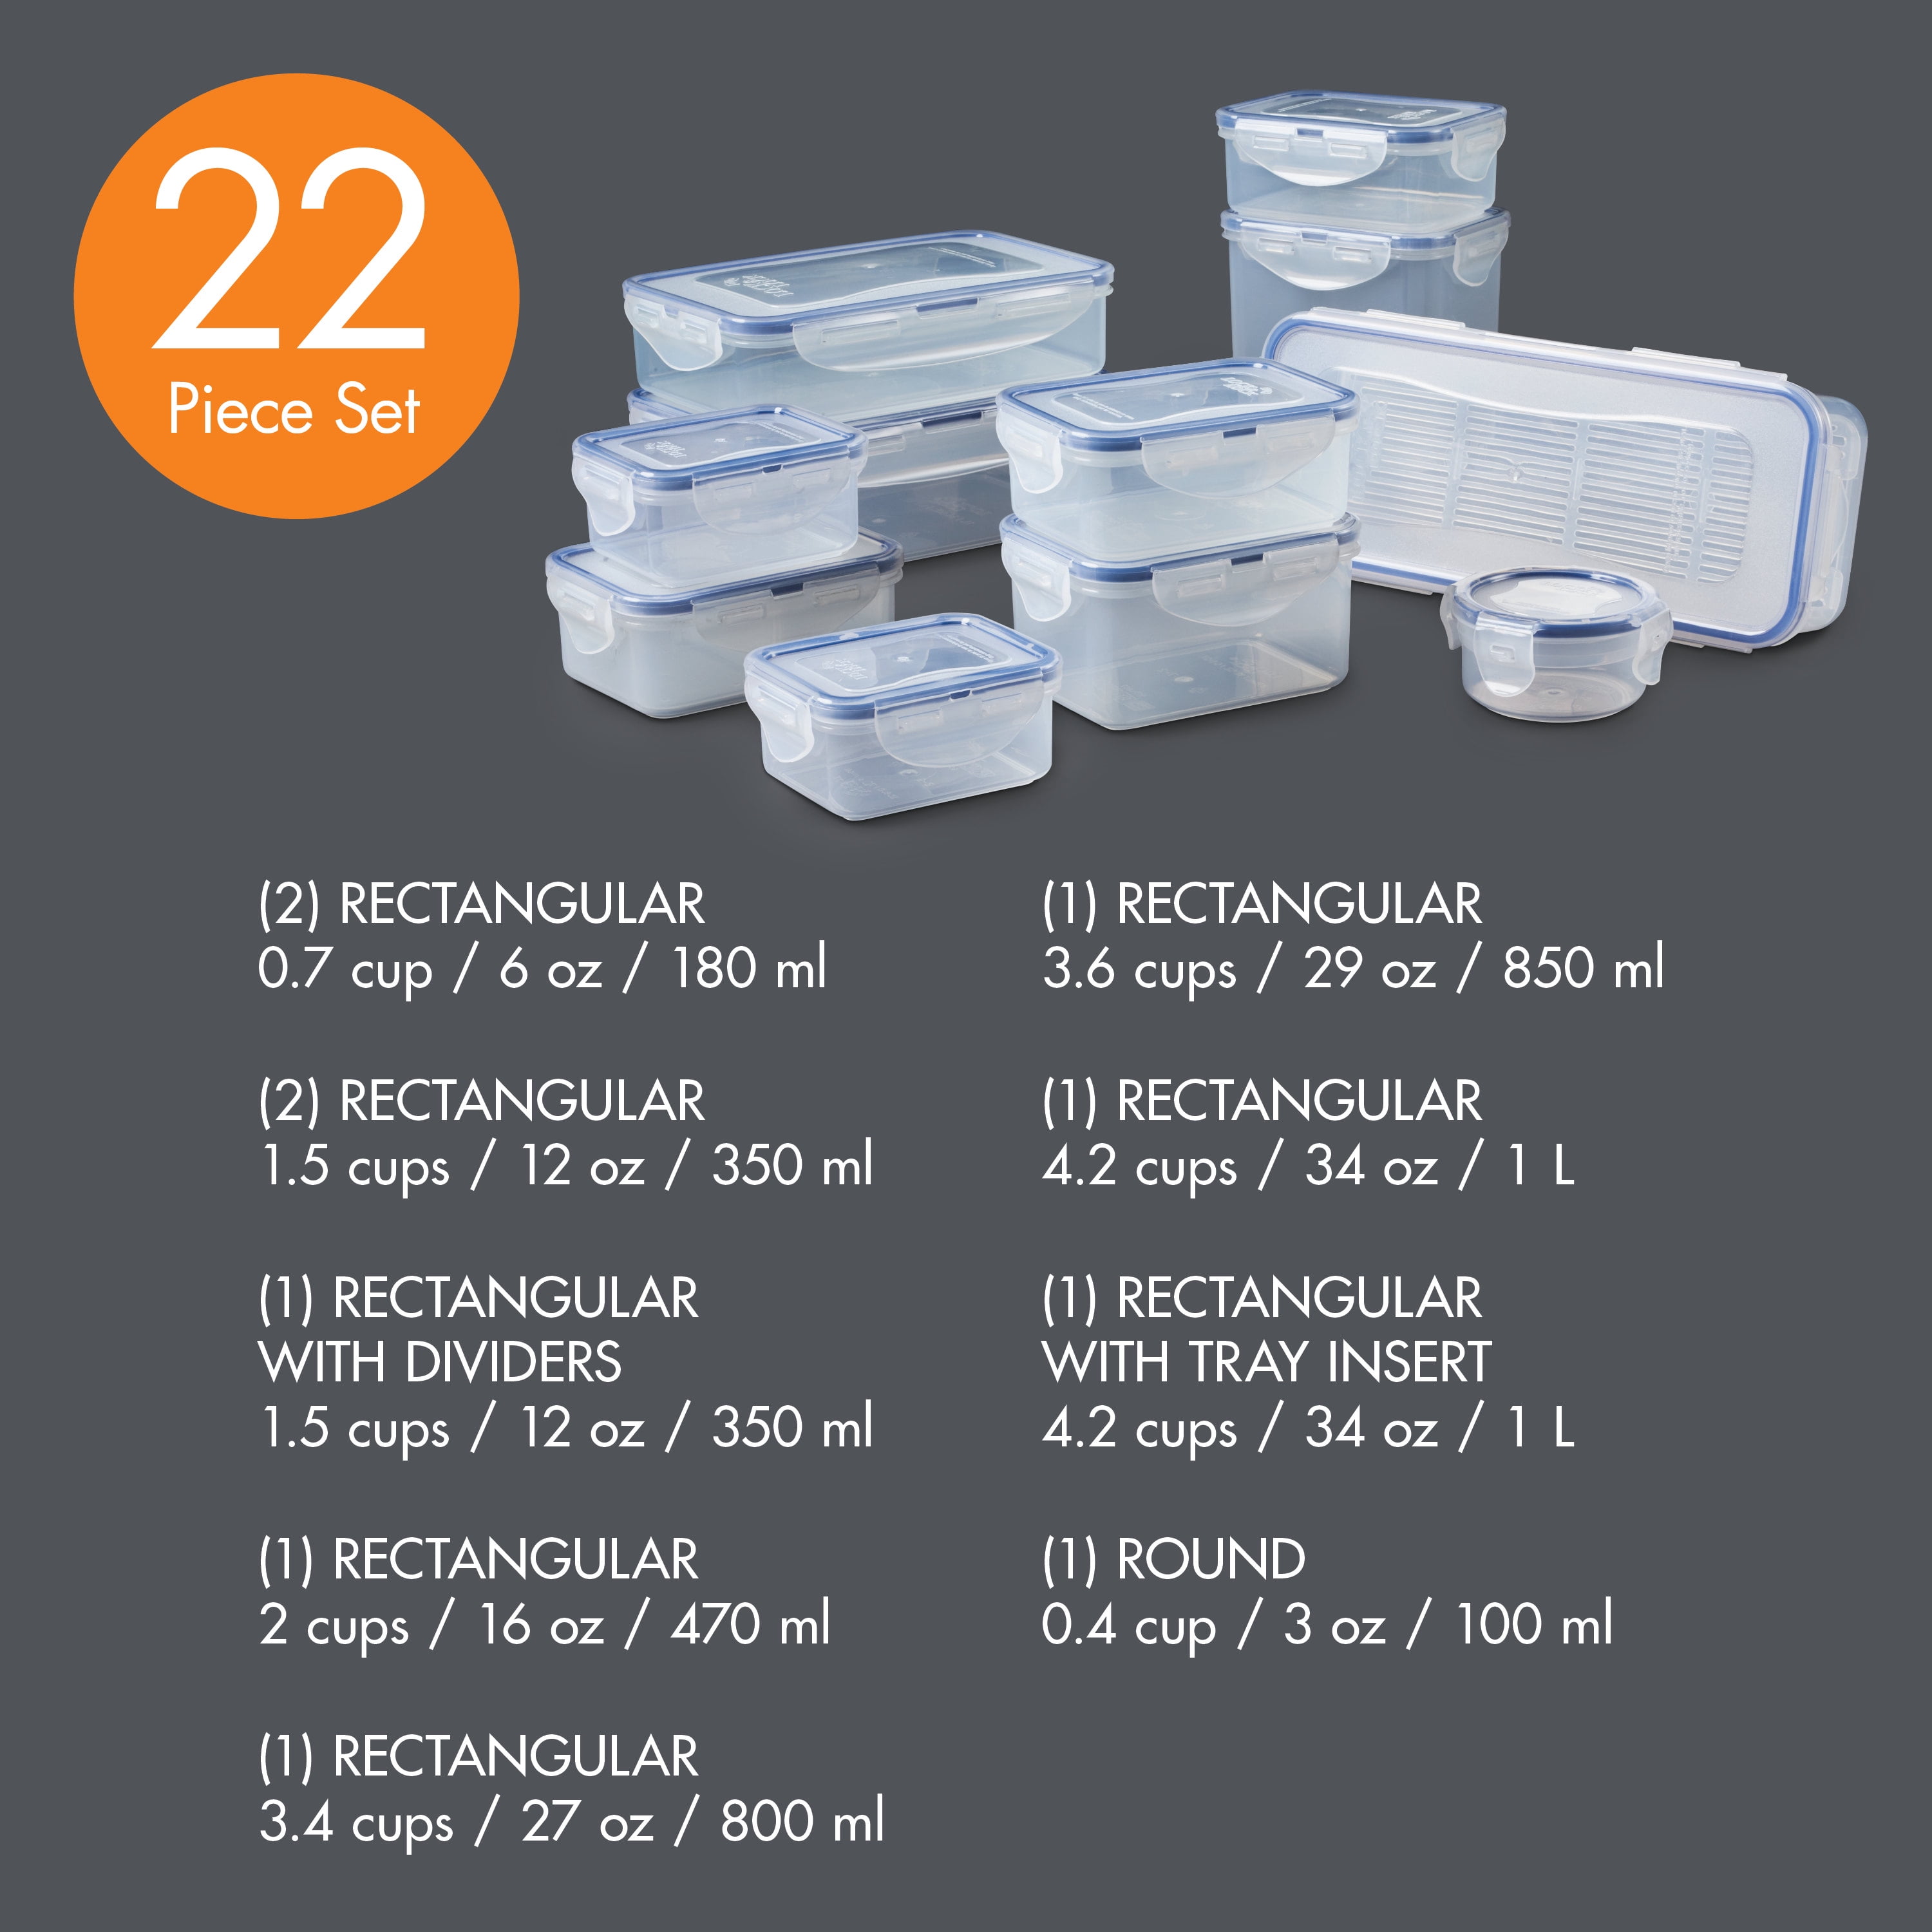 Lock & Lock Easy Essentials 18-Piece Food Storage Container Set